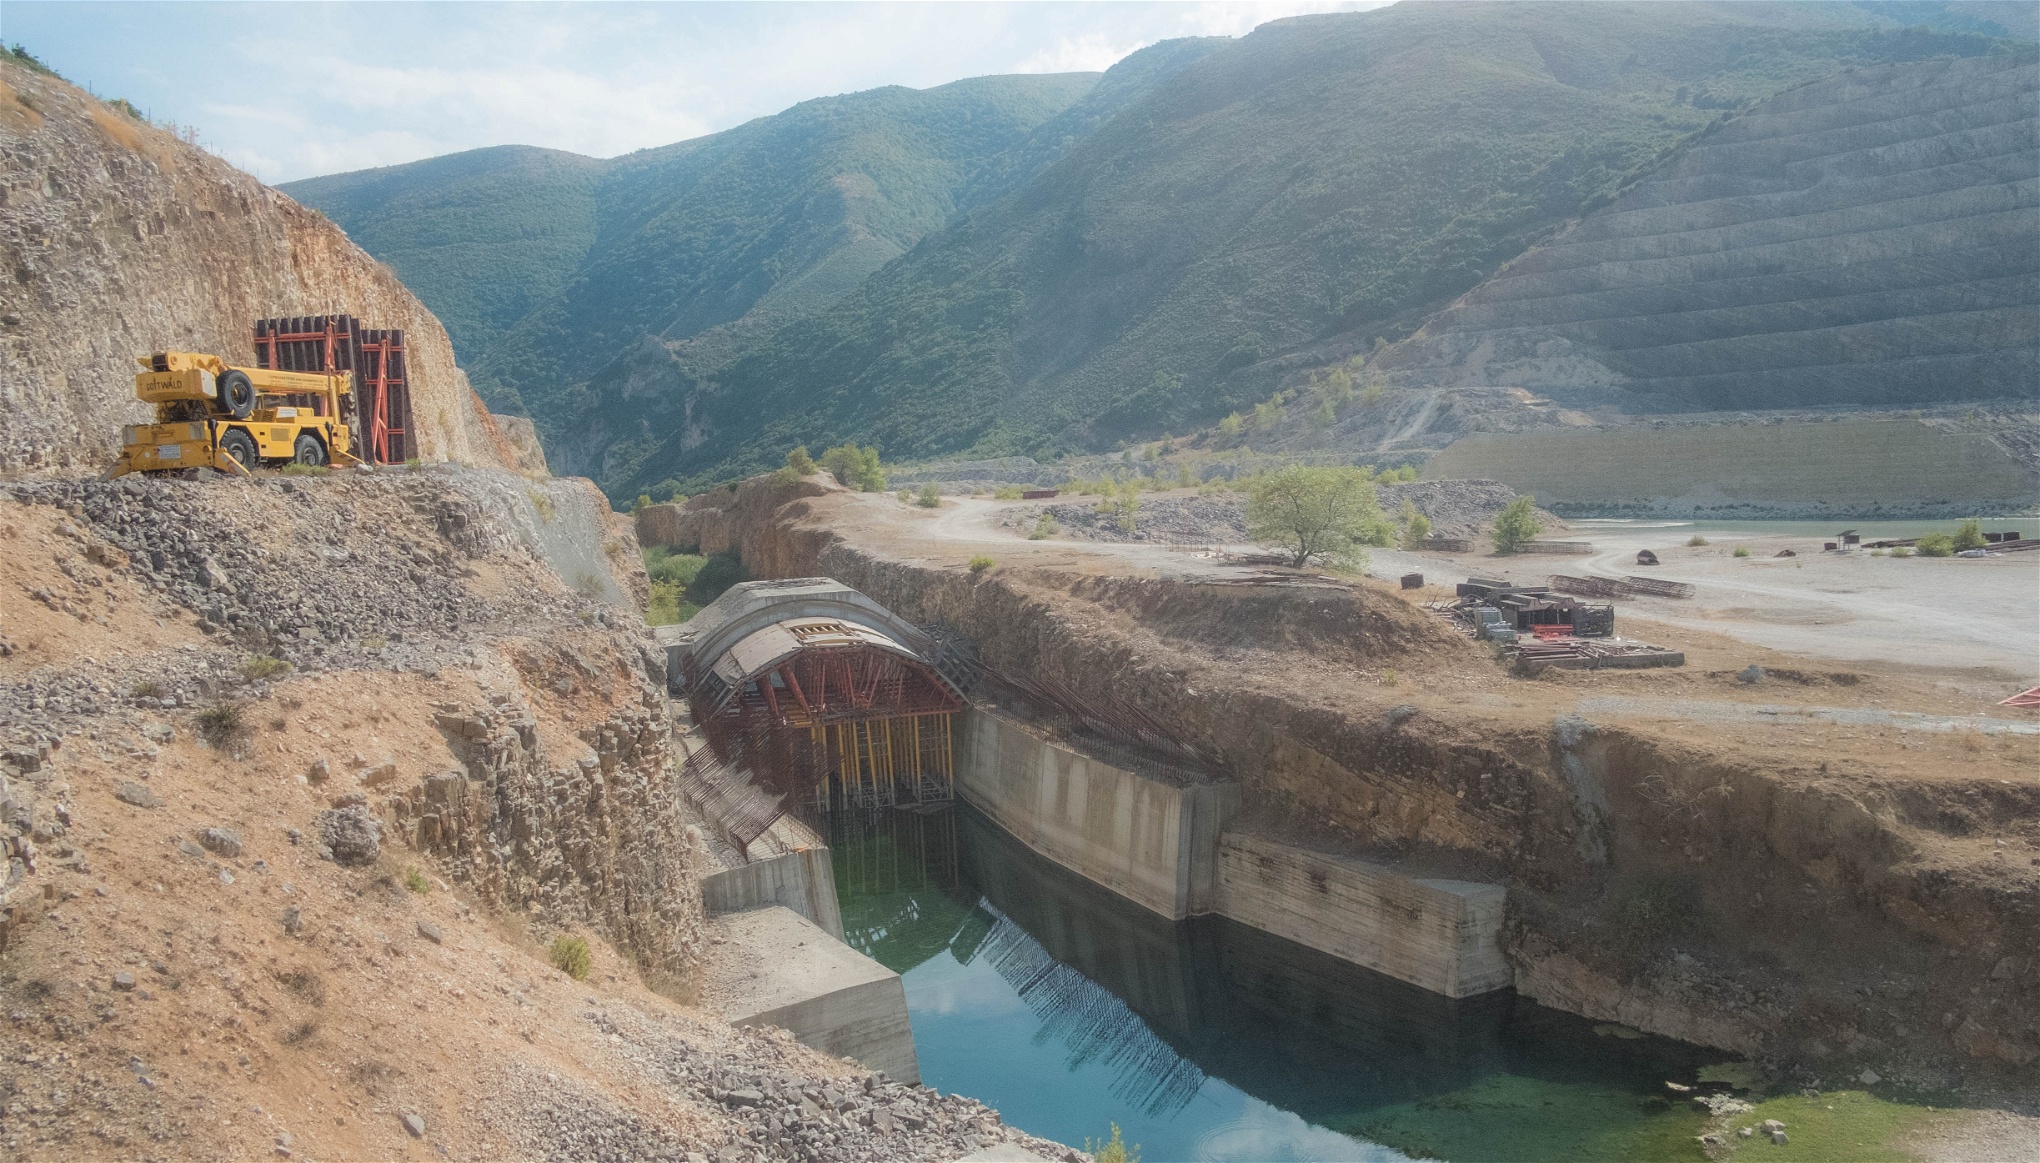 Dammen i Kalivac ligger nu nedlagd och Arbetaren jagas bort av vakter som ska förhindra stölder. För att ge plats åt dammbygget har halva sidan av en bergsvägg grävts bort, och förfallit. Det syns tydligt på de kvarvarande maskinerna och byggnaderna. Dammen är till 30 procent färdigbyggd. Foto: Enes Mehmedagic